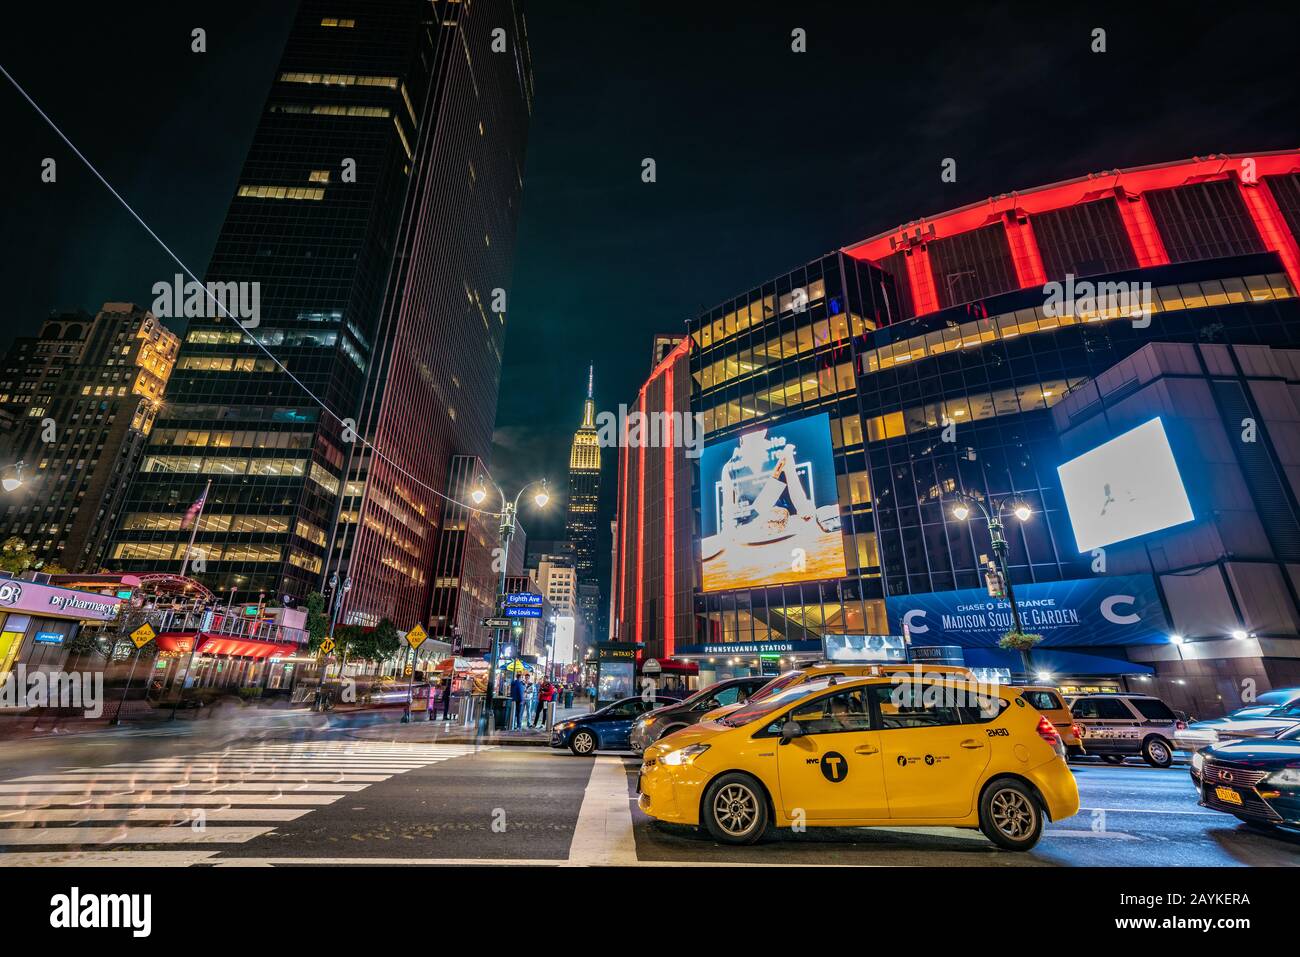 New YORK, États-Unis - 13 OCTOBRE : paysage urbain de Midtown Manhattan à l'extérieur de la célèbre Madison Square Garden Arena la nuit le 13 octobre 2019 à New York Banque D'Images